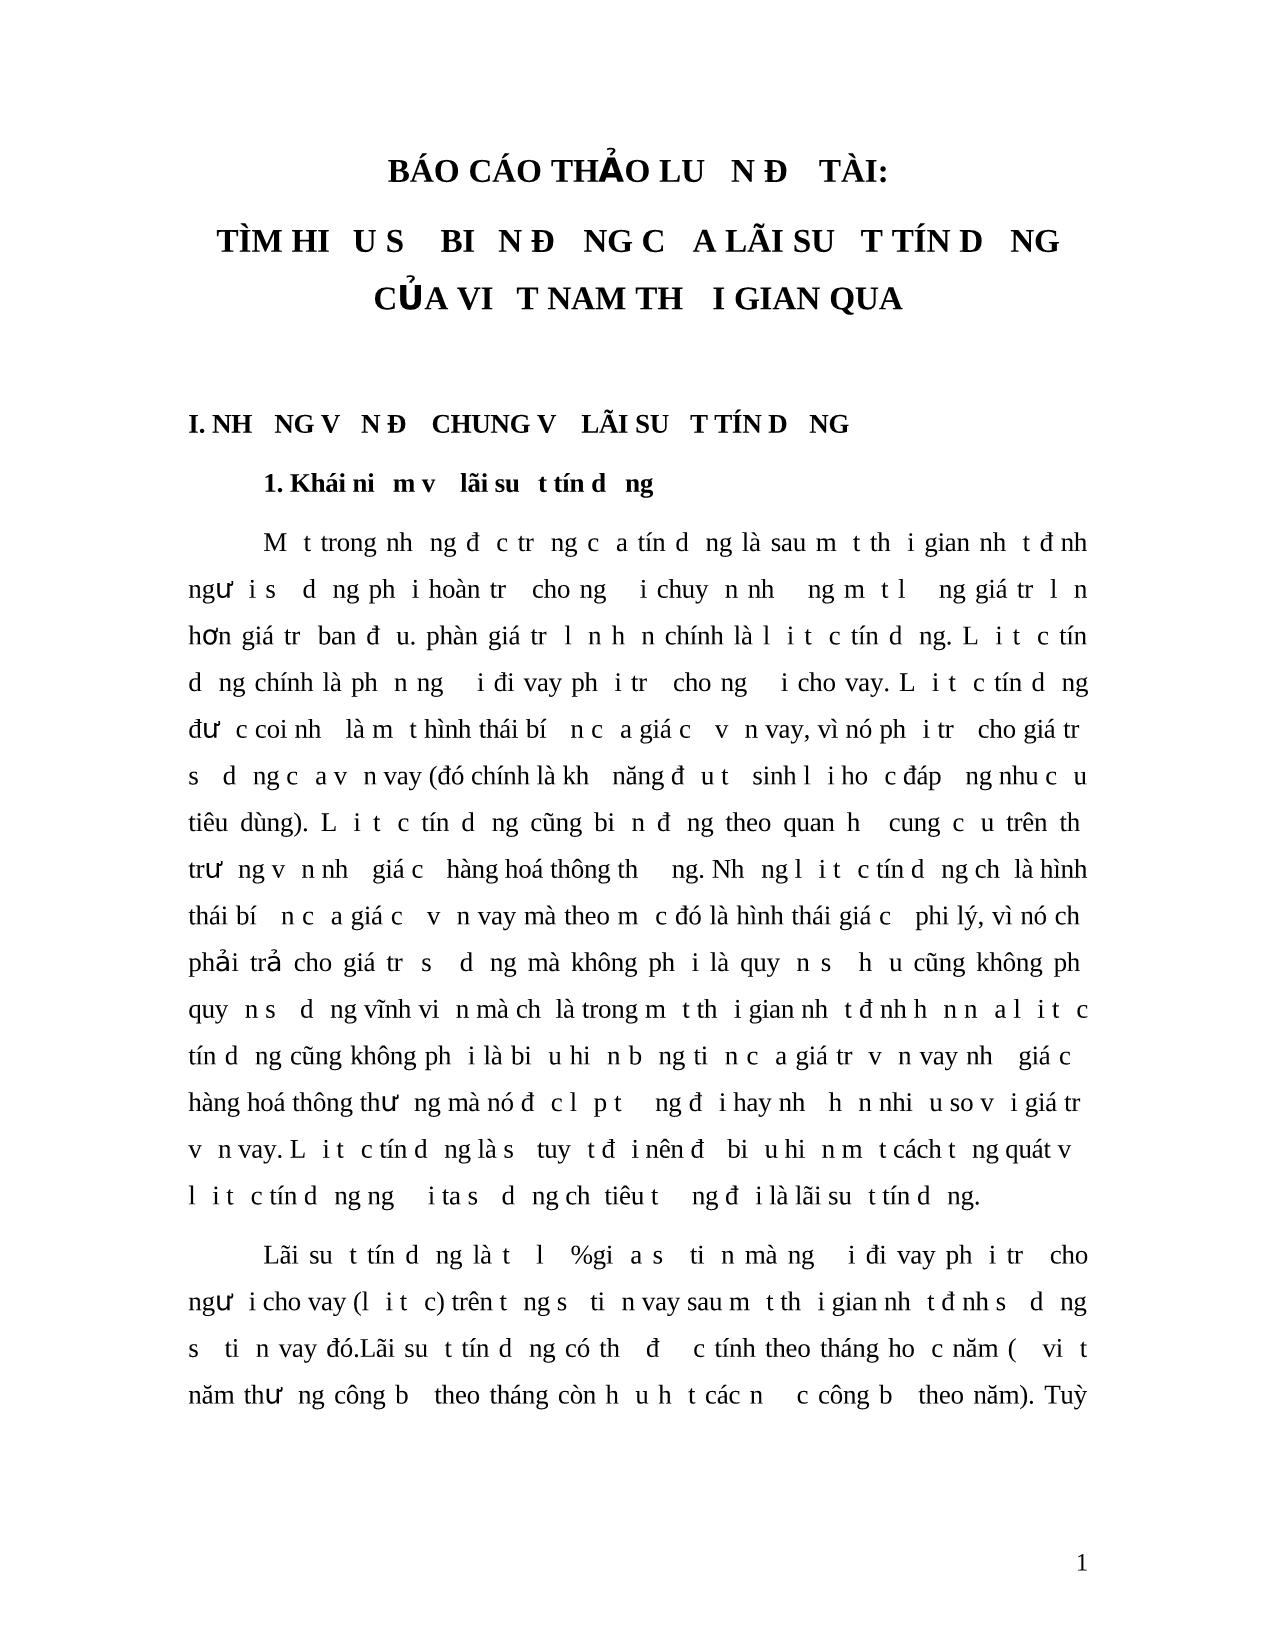 Đề tài Tìm hiểu sự biến động của lãi suất tín dụng của Việt Nam thời gian qua trang 1